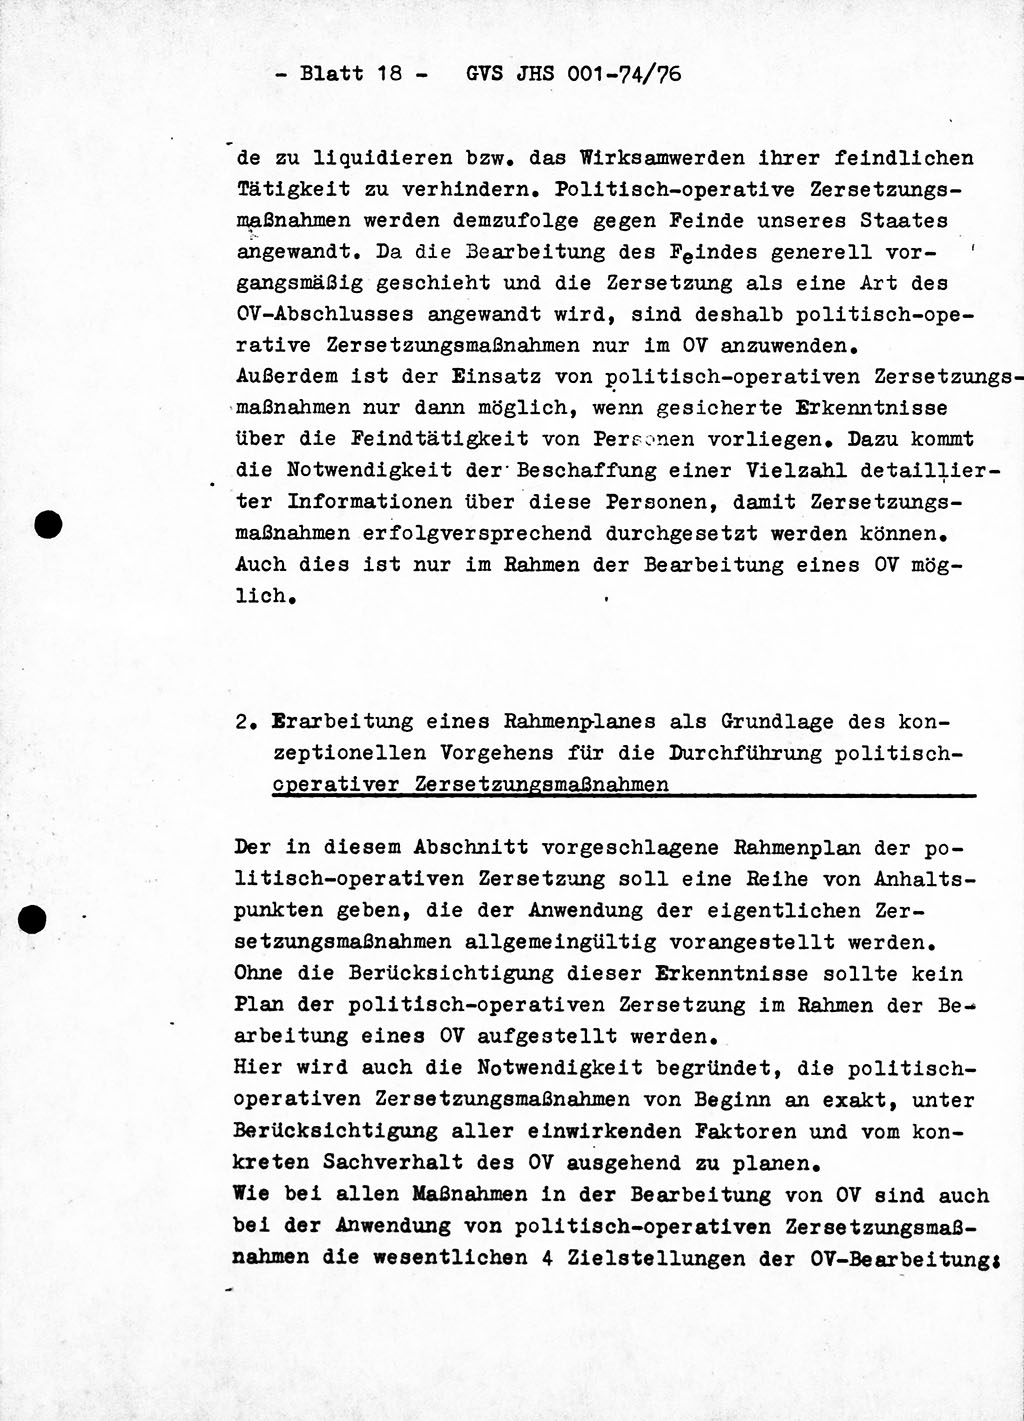 Diplomarbeit Hauptmann Joachim Tischendorf (HA ⅩⅩ), Ministerium für Staatssicherheit (MfS) der Deutschen Demokratischen Republik (DDR), Juristische Hochschule (JHS), Geheime Verschlußsache (GVS) 001-74/76, Potsdam 1976, Seite 18 (Dipl.-Arb. MfS DDR JHS GVS 001-74/76 1976, S. 18)